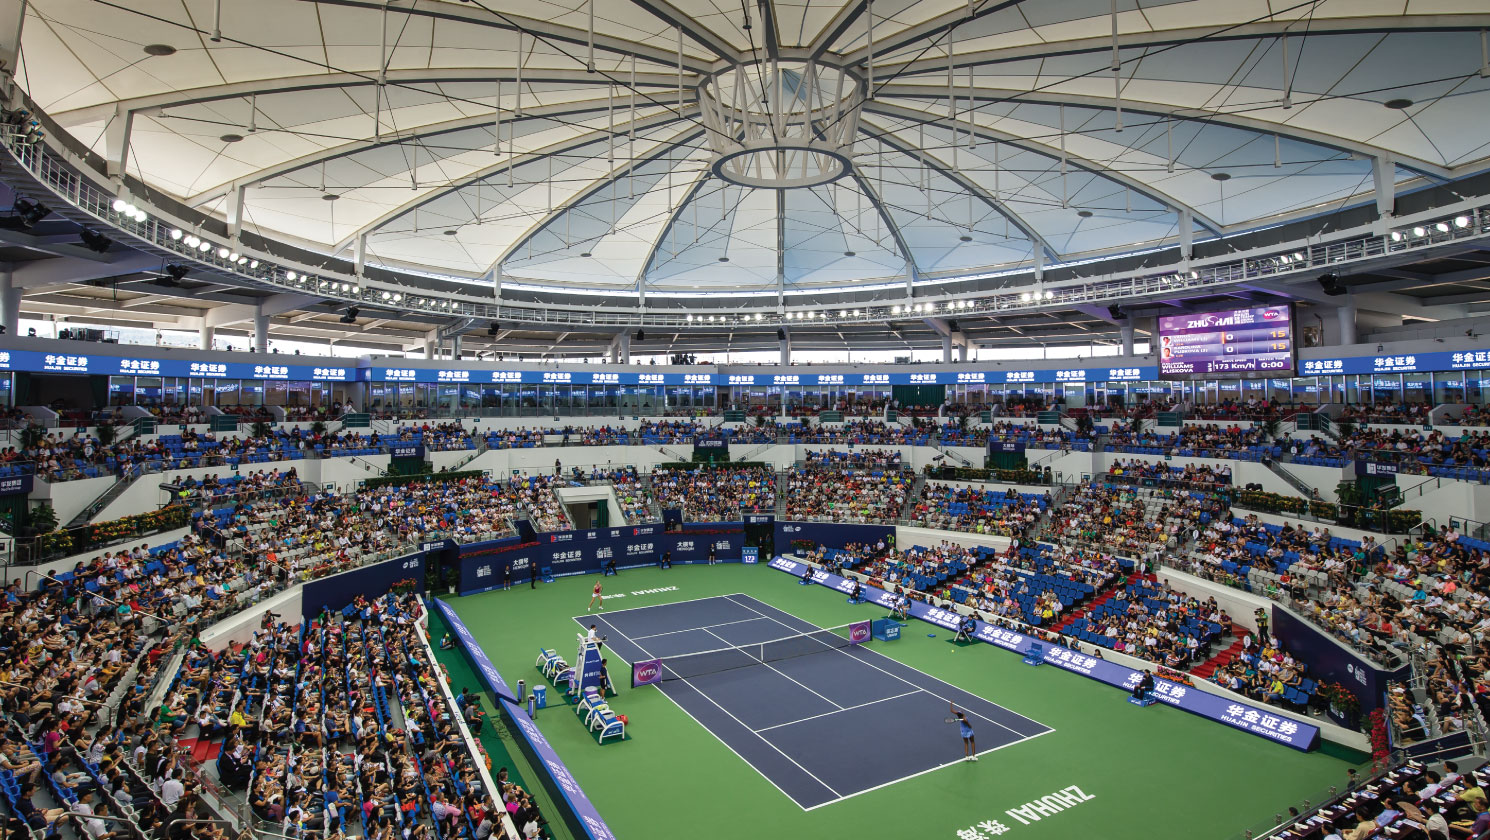 Zhuhai Tennis Centre Populous